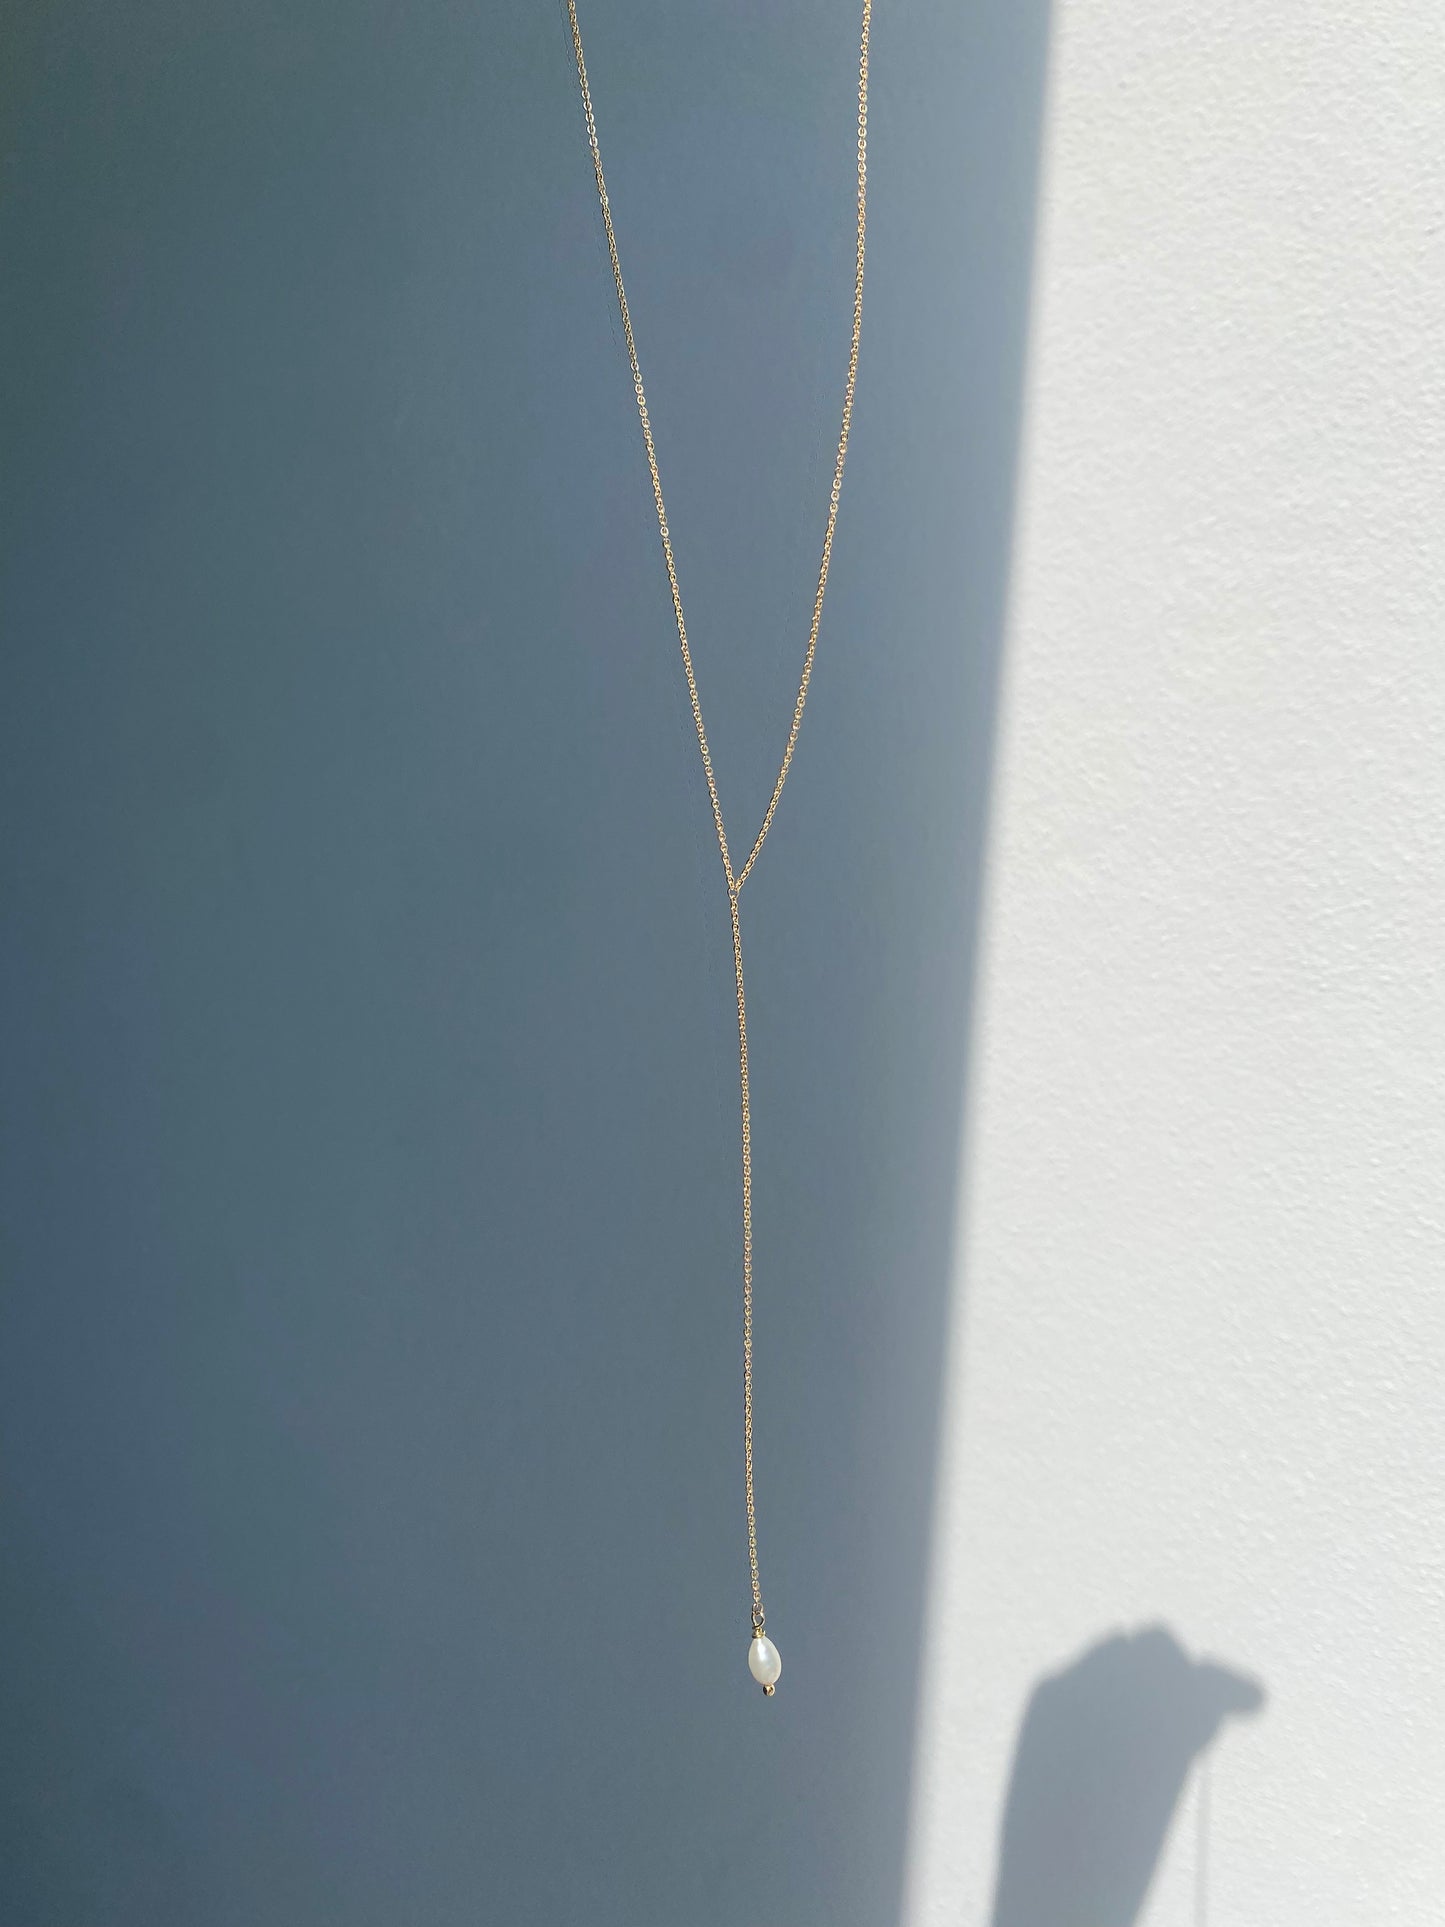 Ipanema lariat necklace